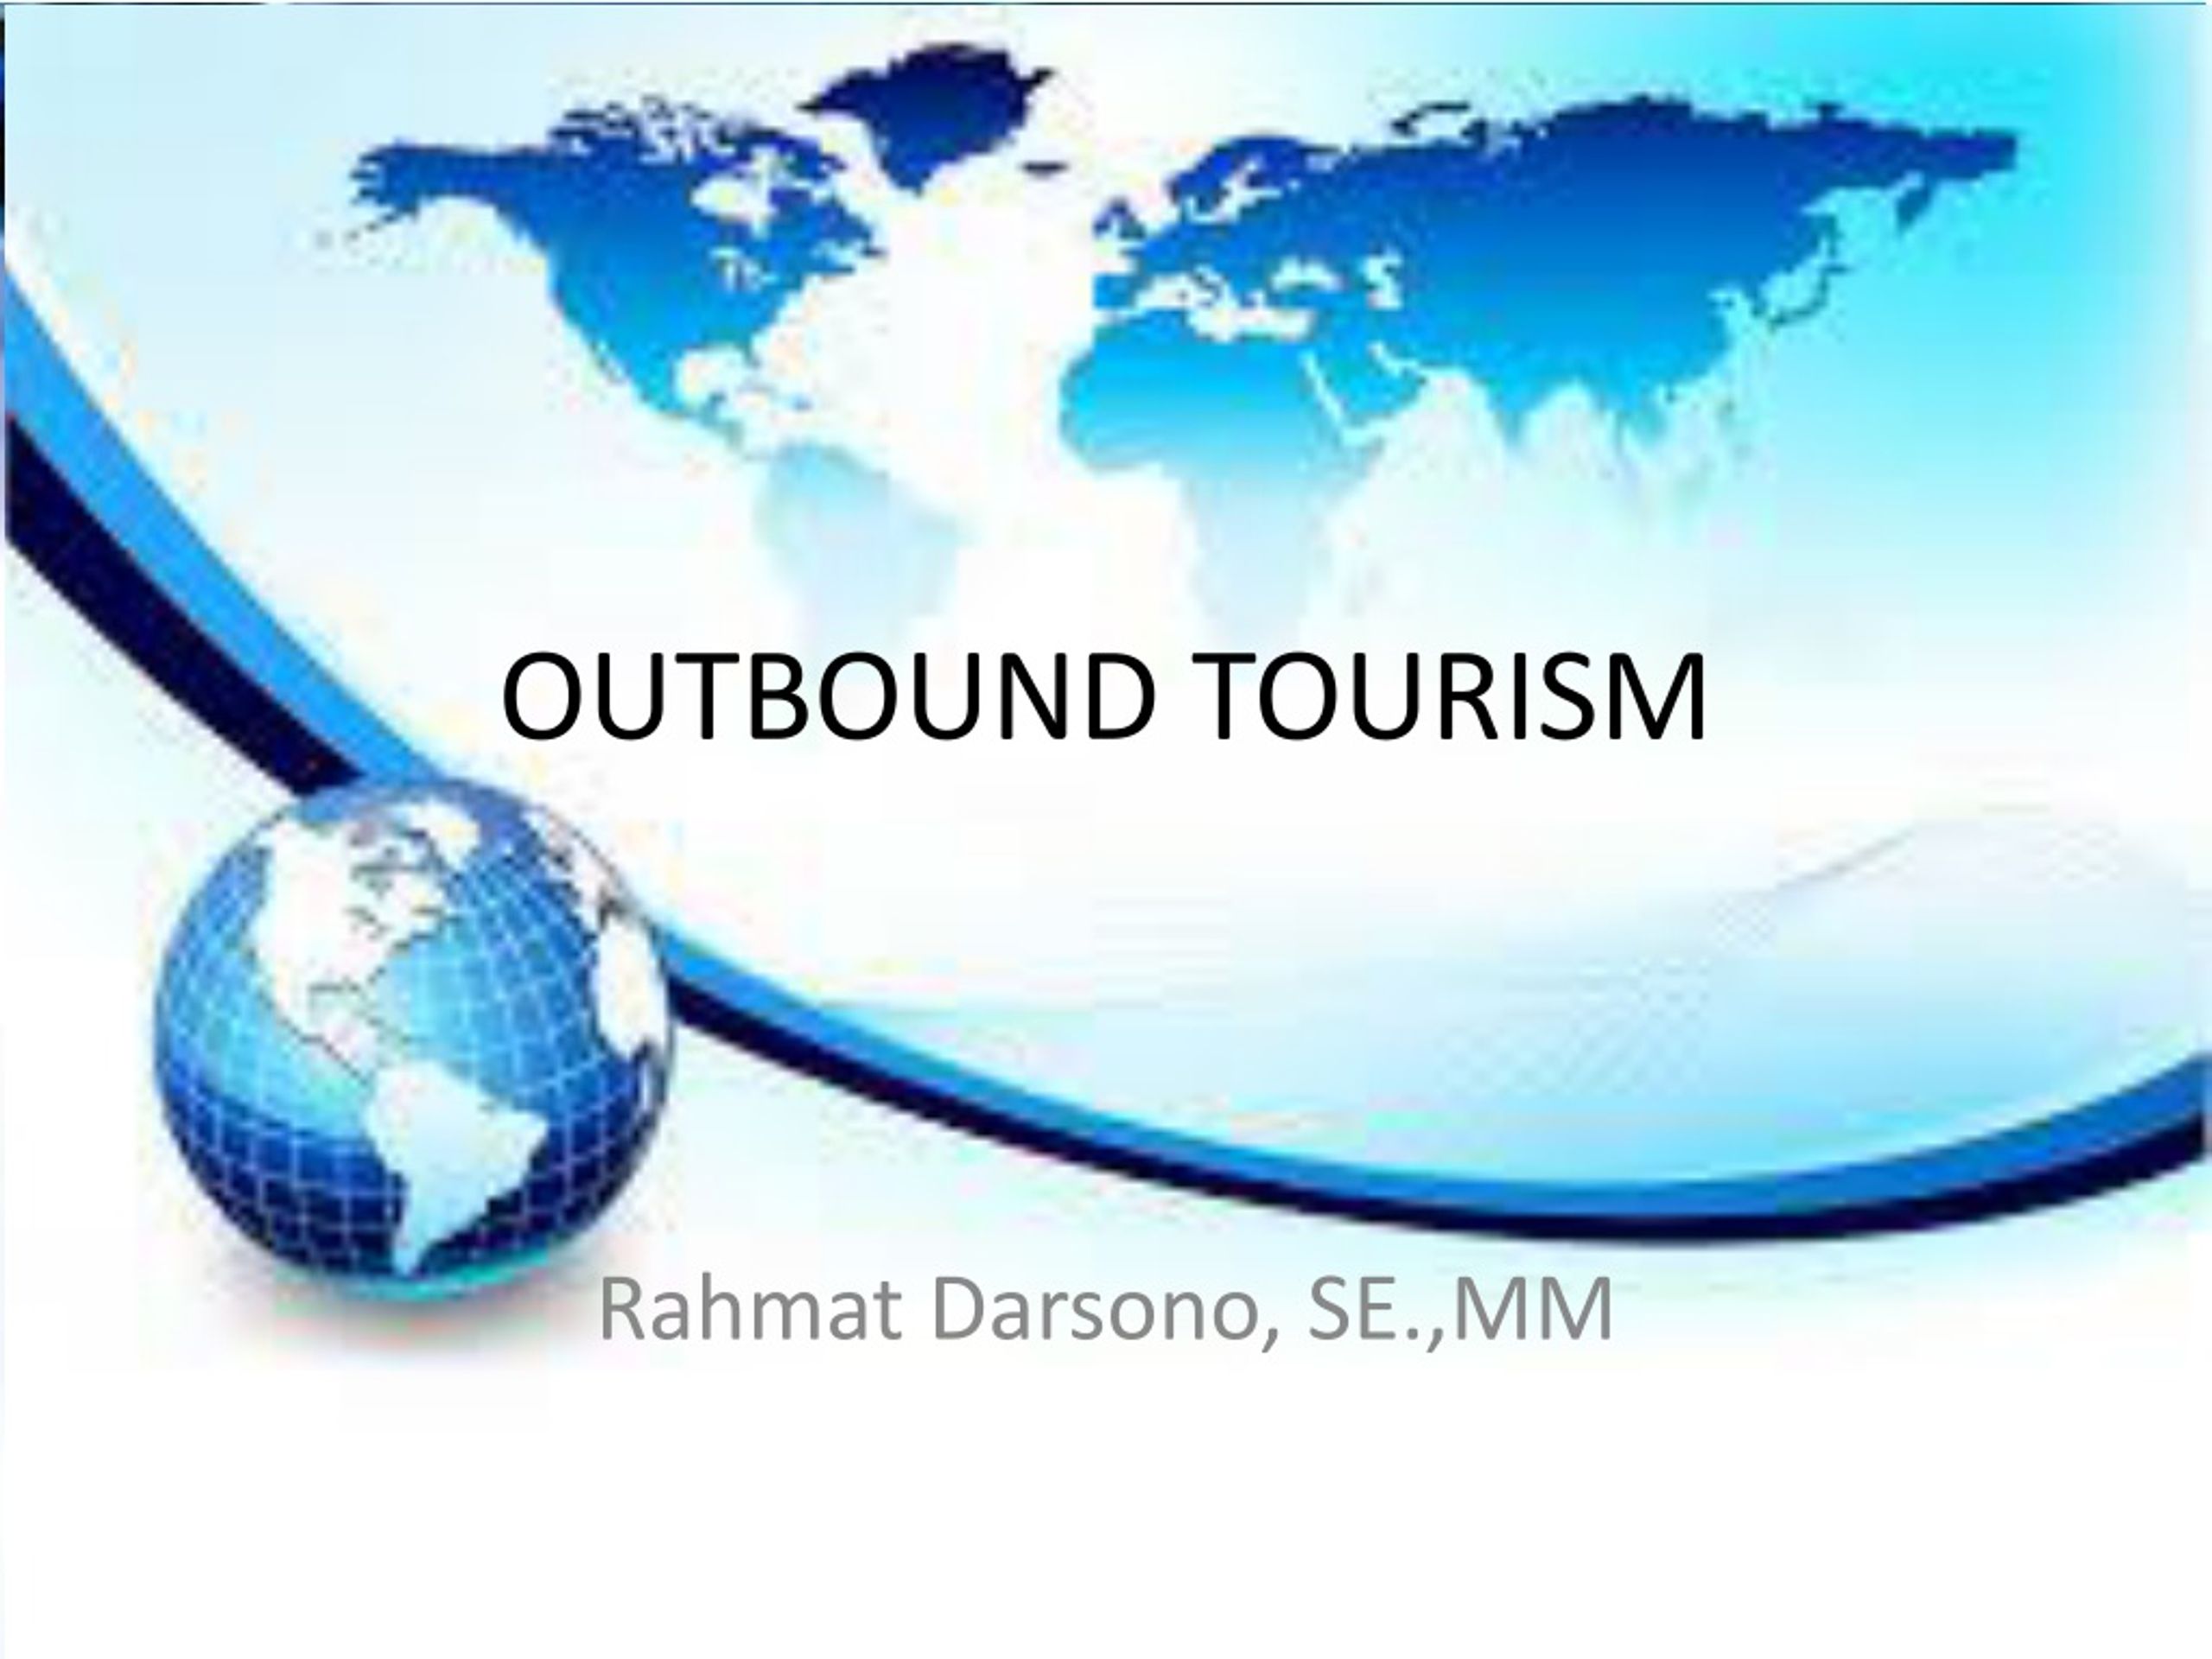 outbound tourism wikipedia